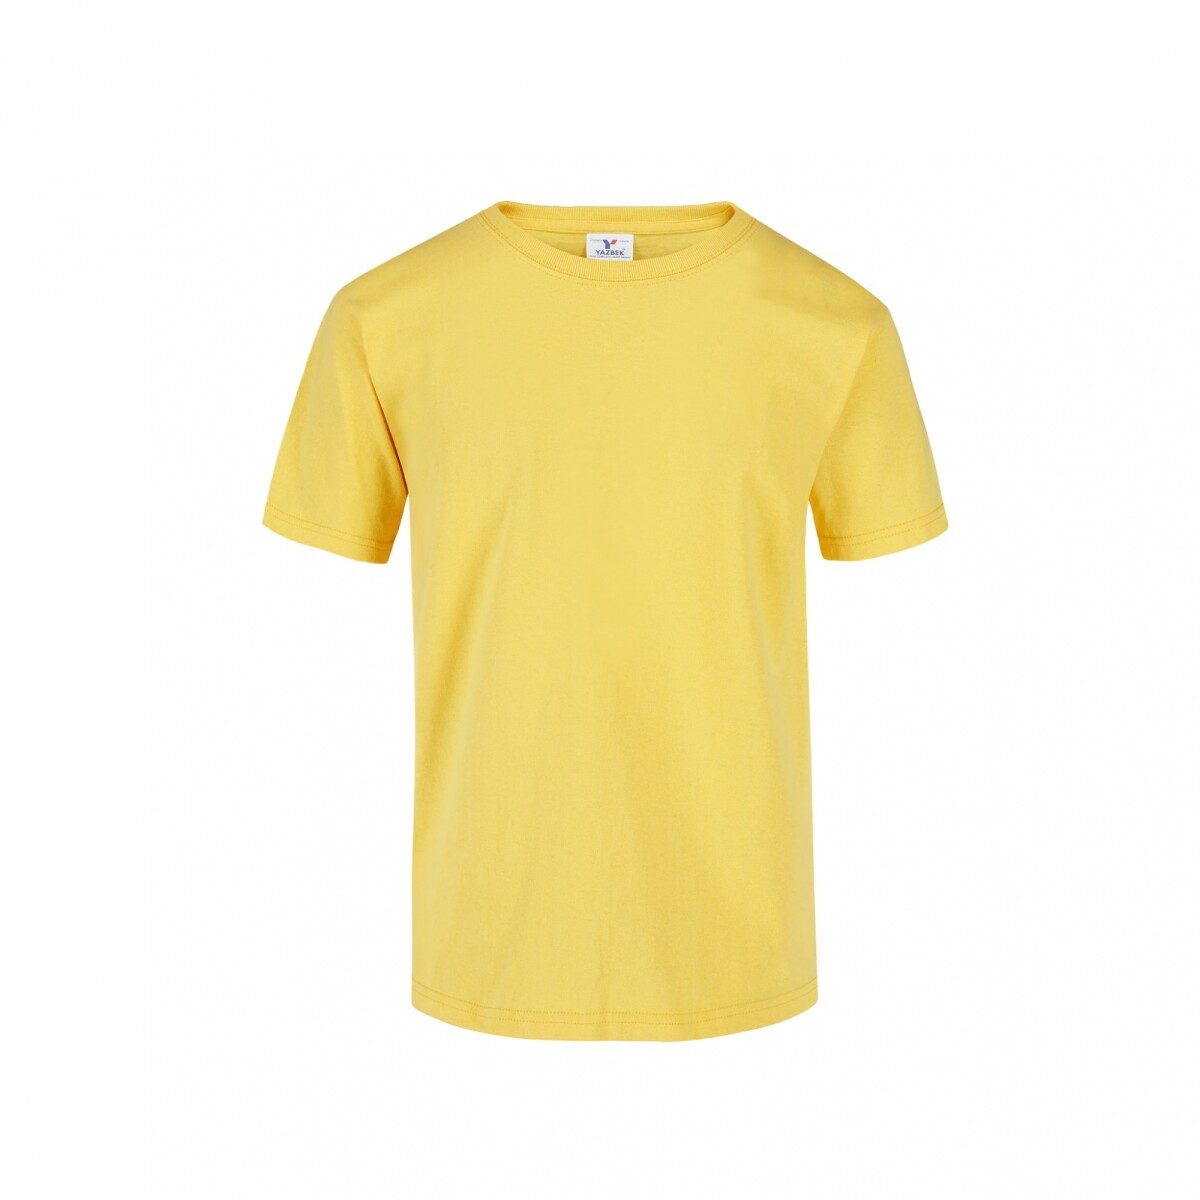 Camiseta a la base joven - Amarillo canario 